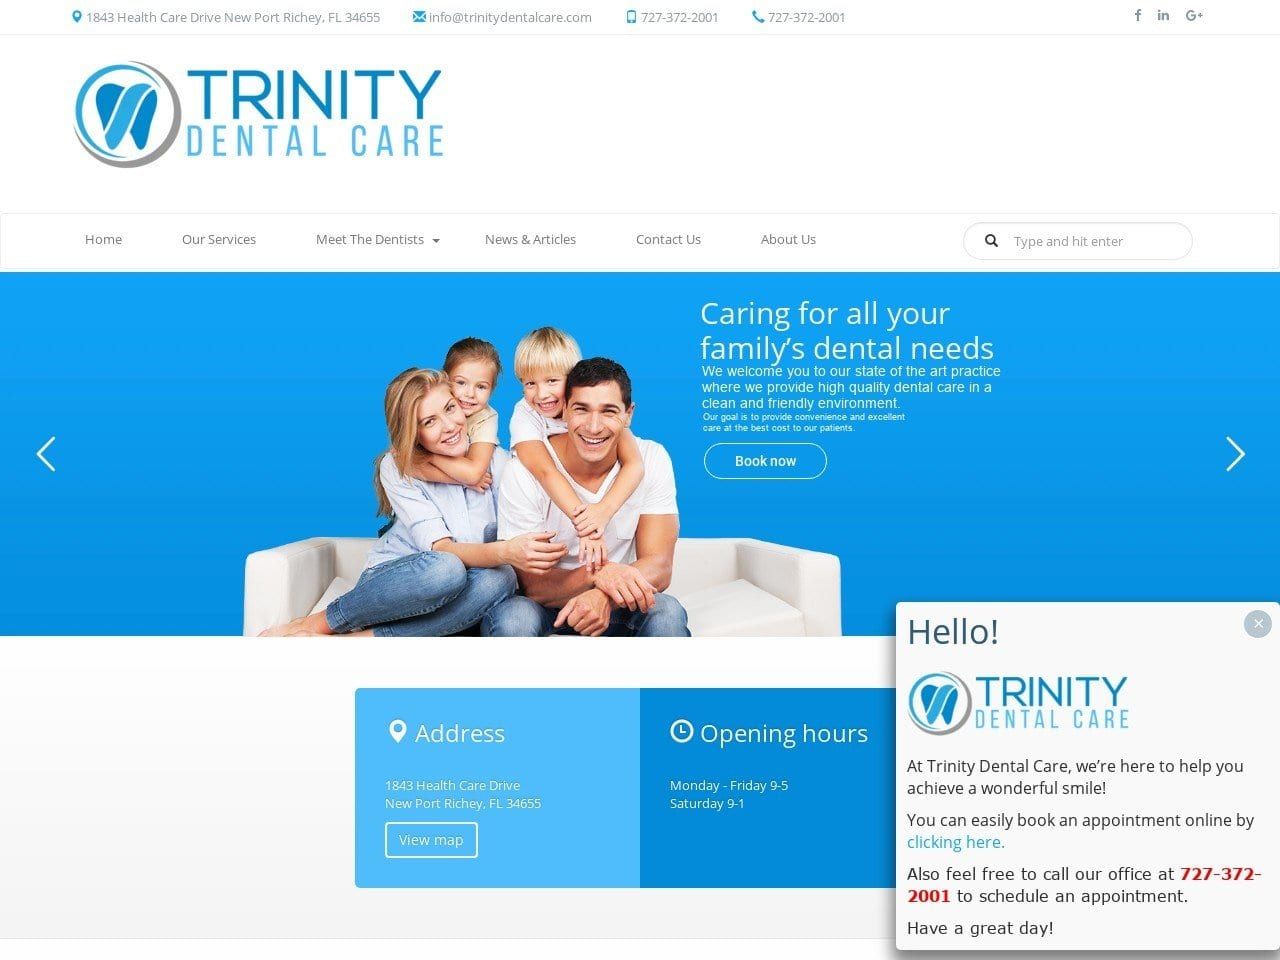 Trinity Dental Care Inc Website Screenshot from trinitydentalcare.com